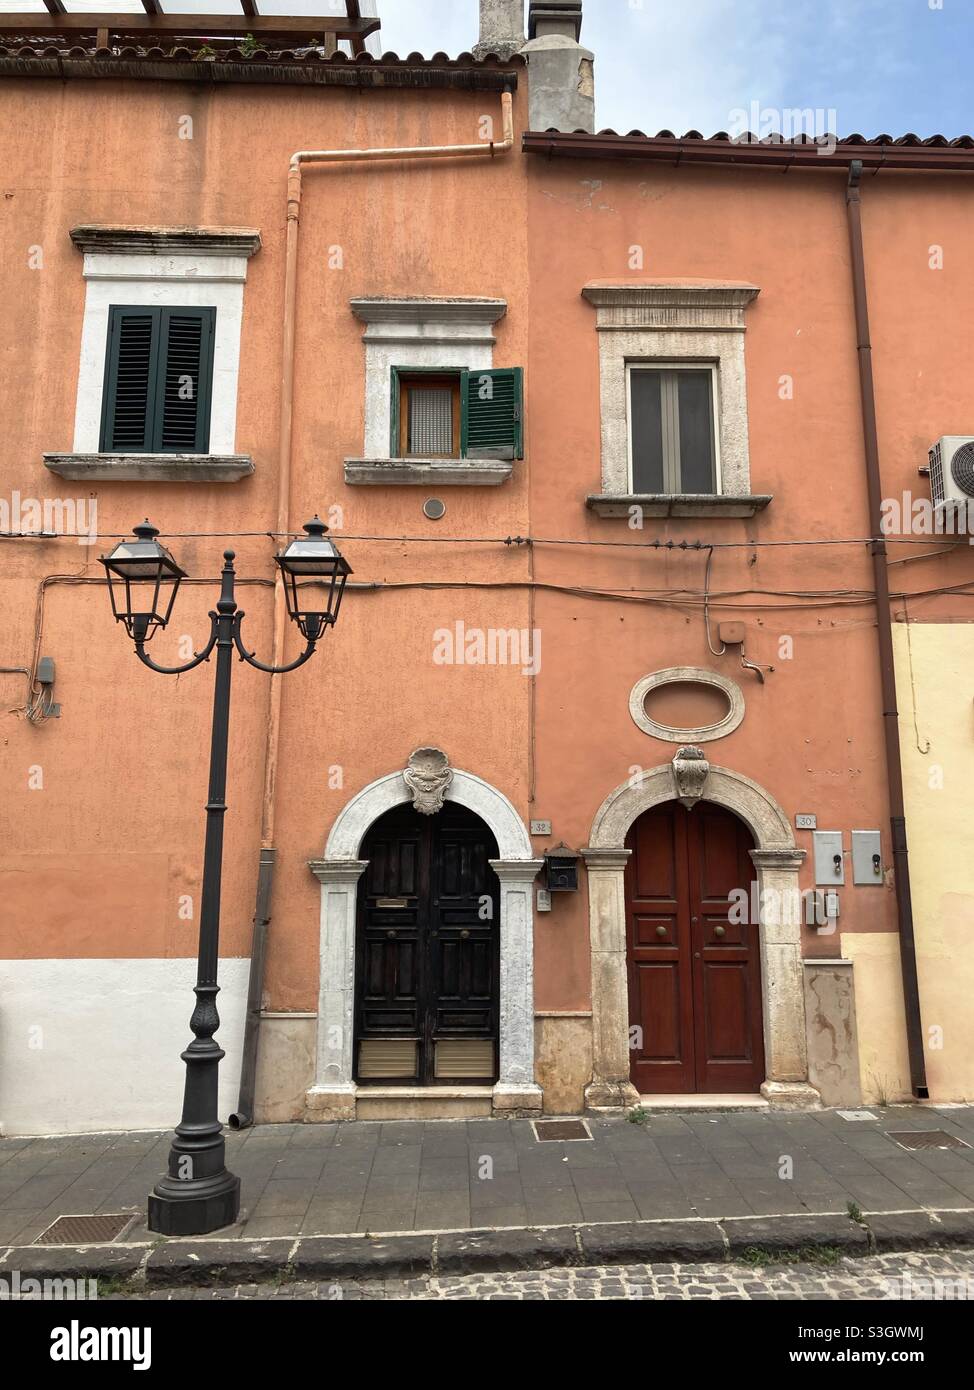 Eine Hausfassade in der kleinen Stadt Vico de Gargano, Apulien, Italien Stockfoto